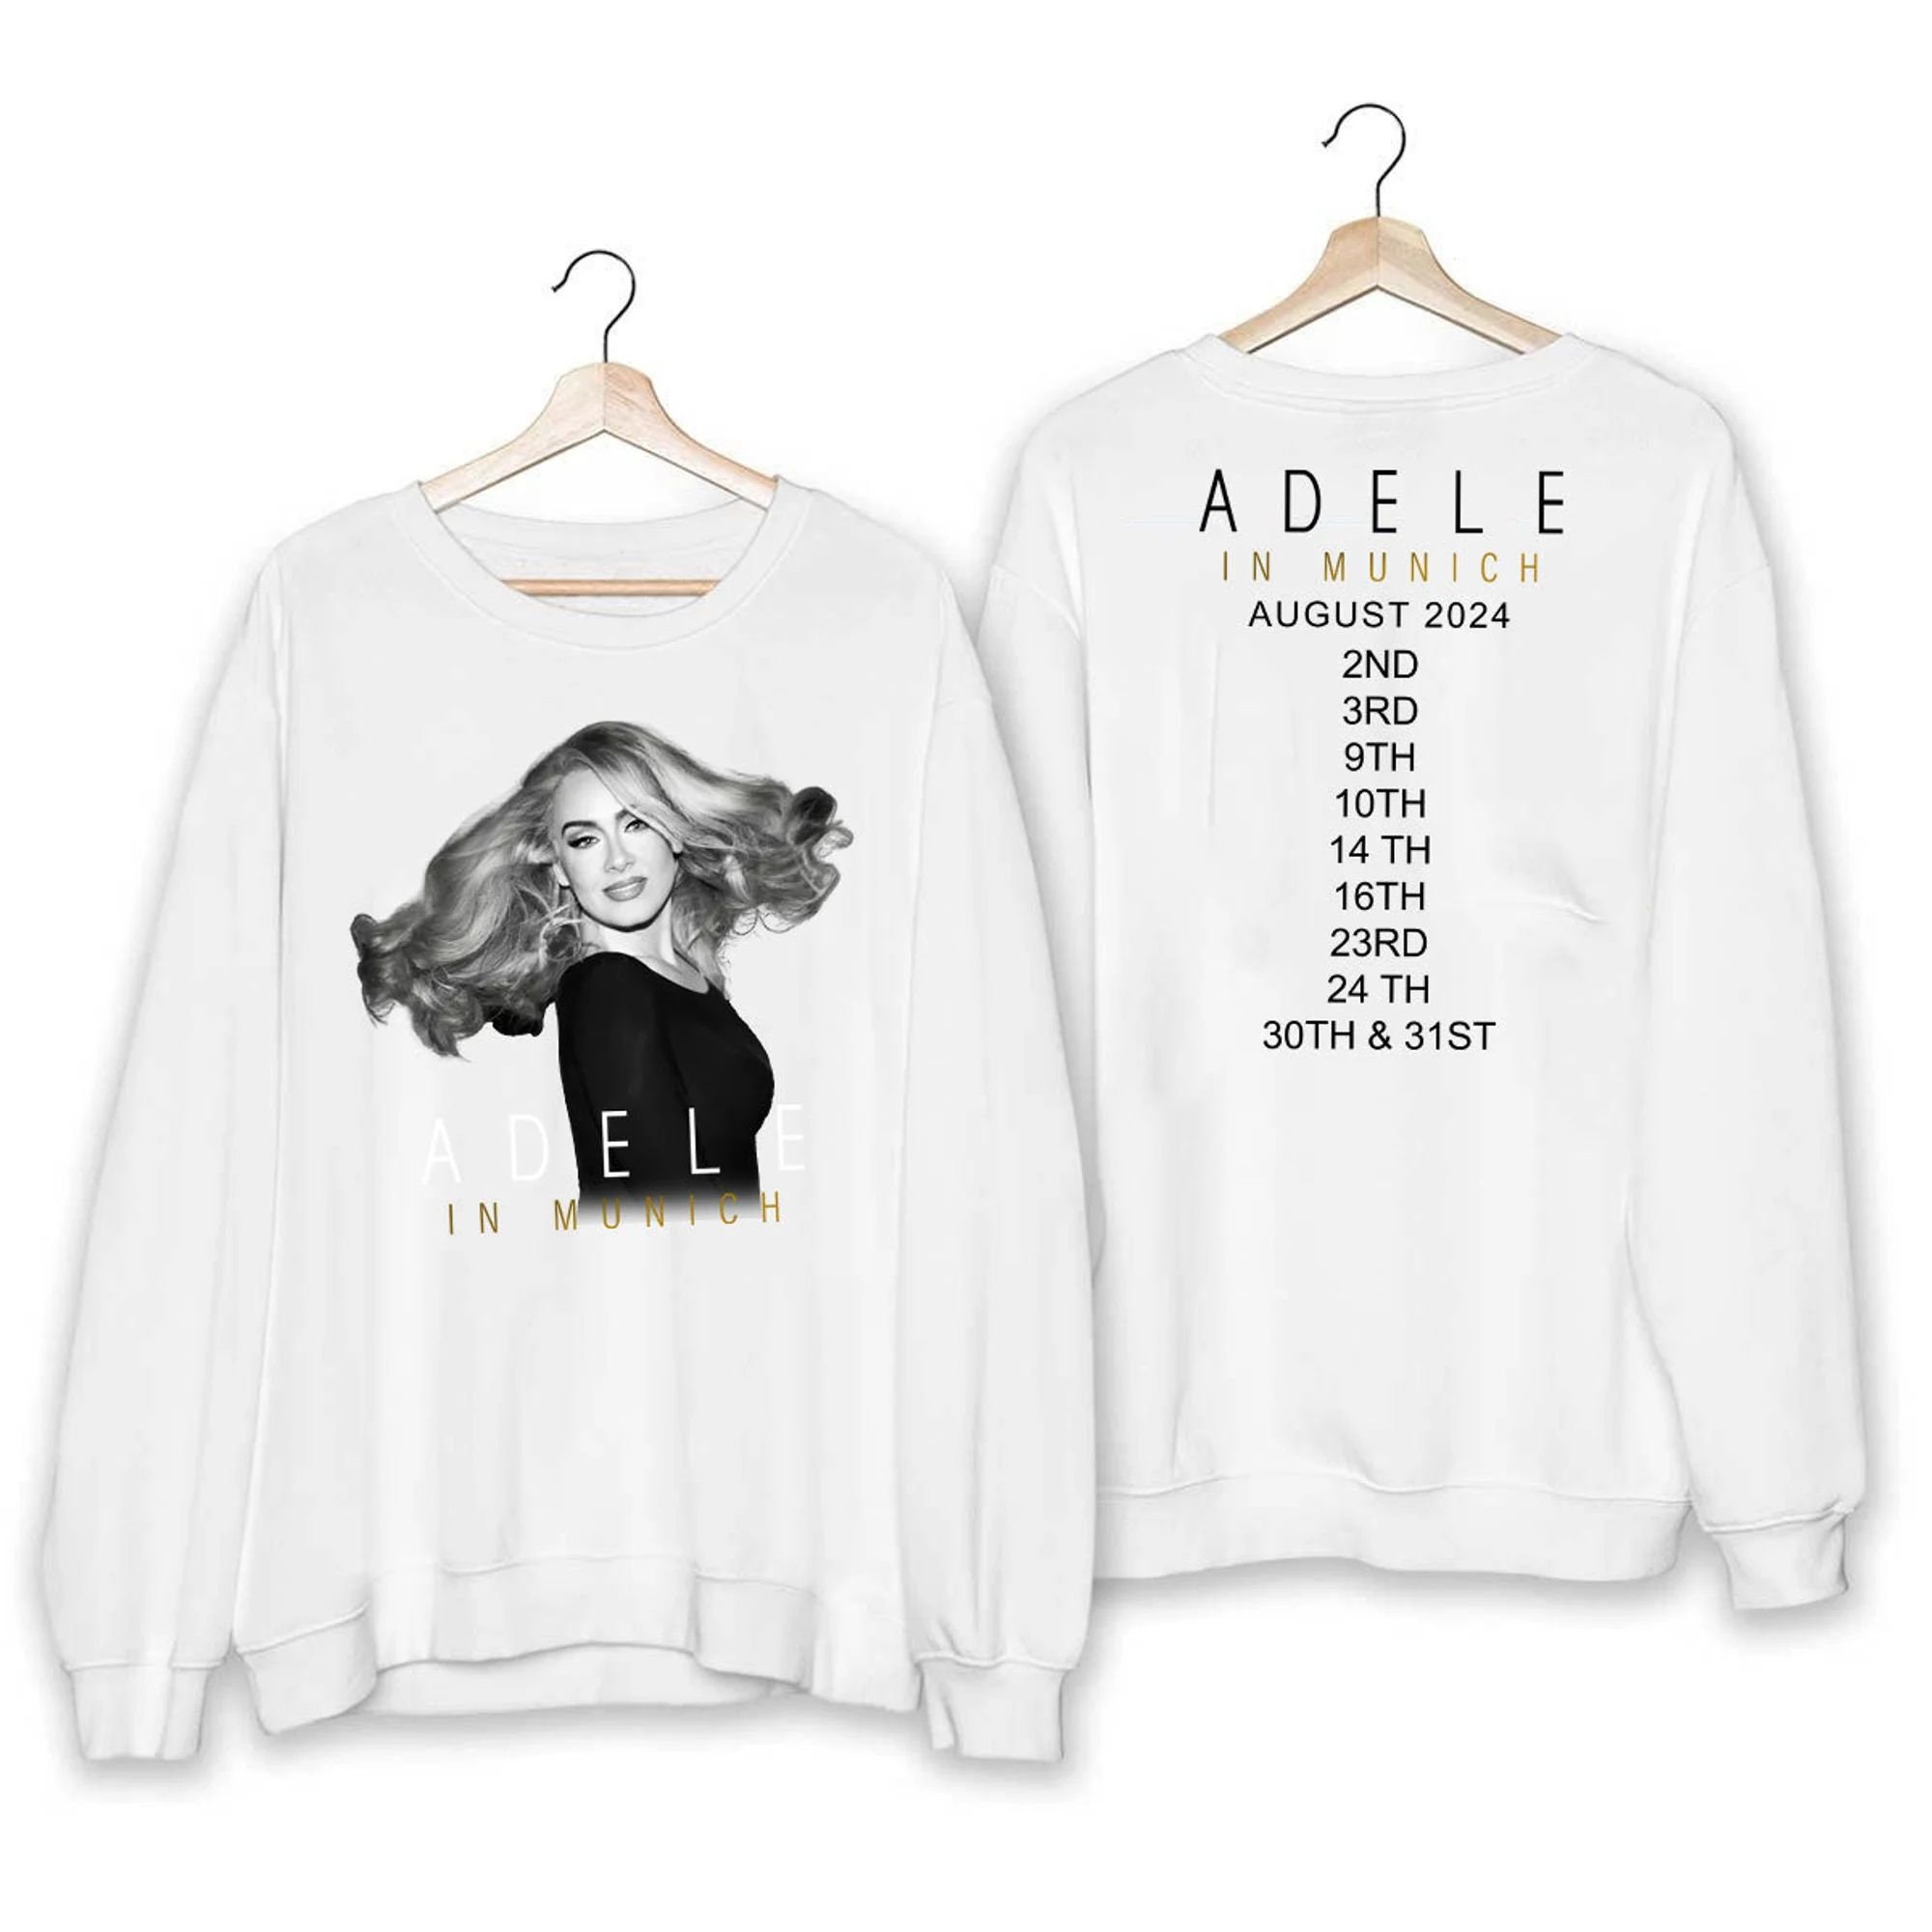 Adele In Munich 2024 Shirt, Adele In Munich 2024 Tour Shirt